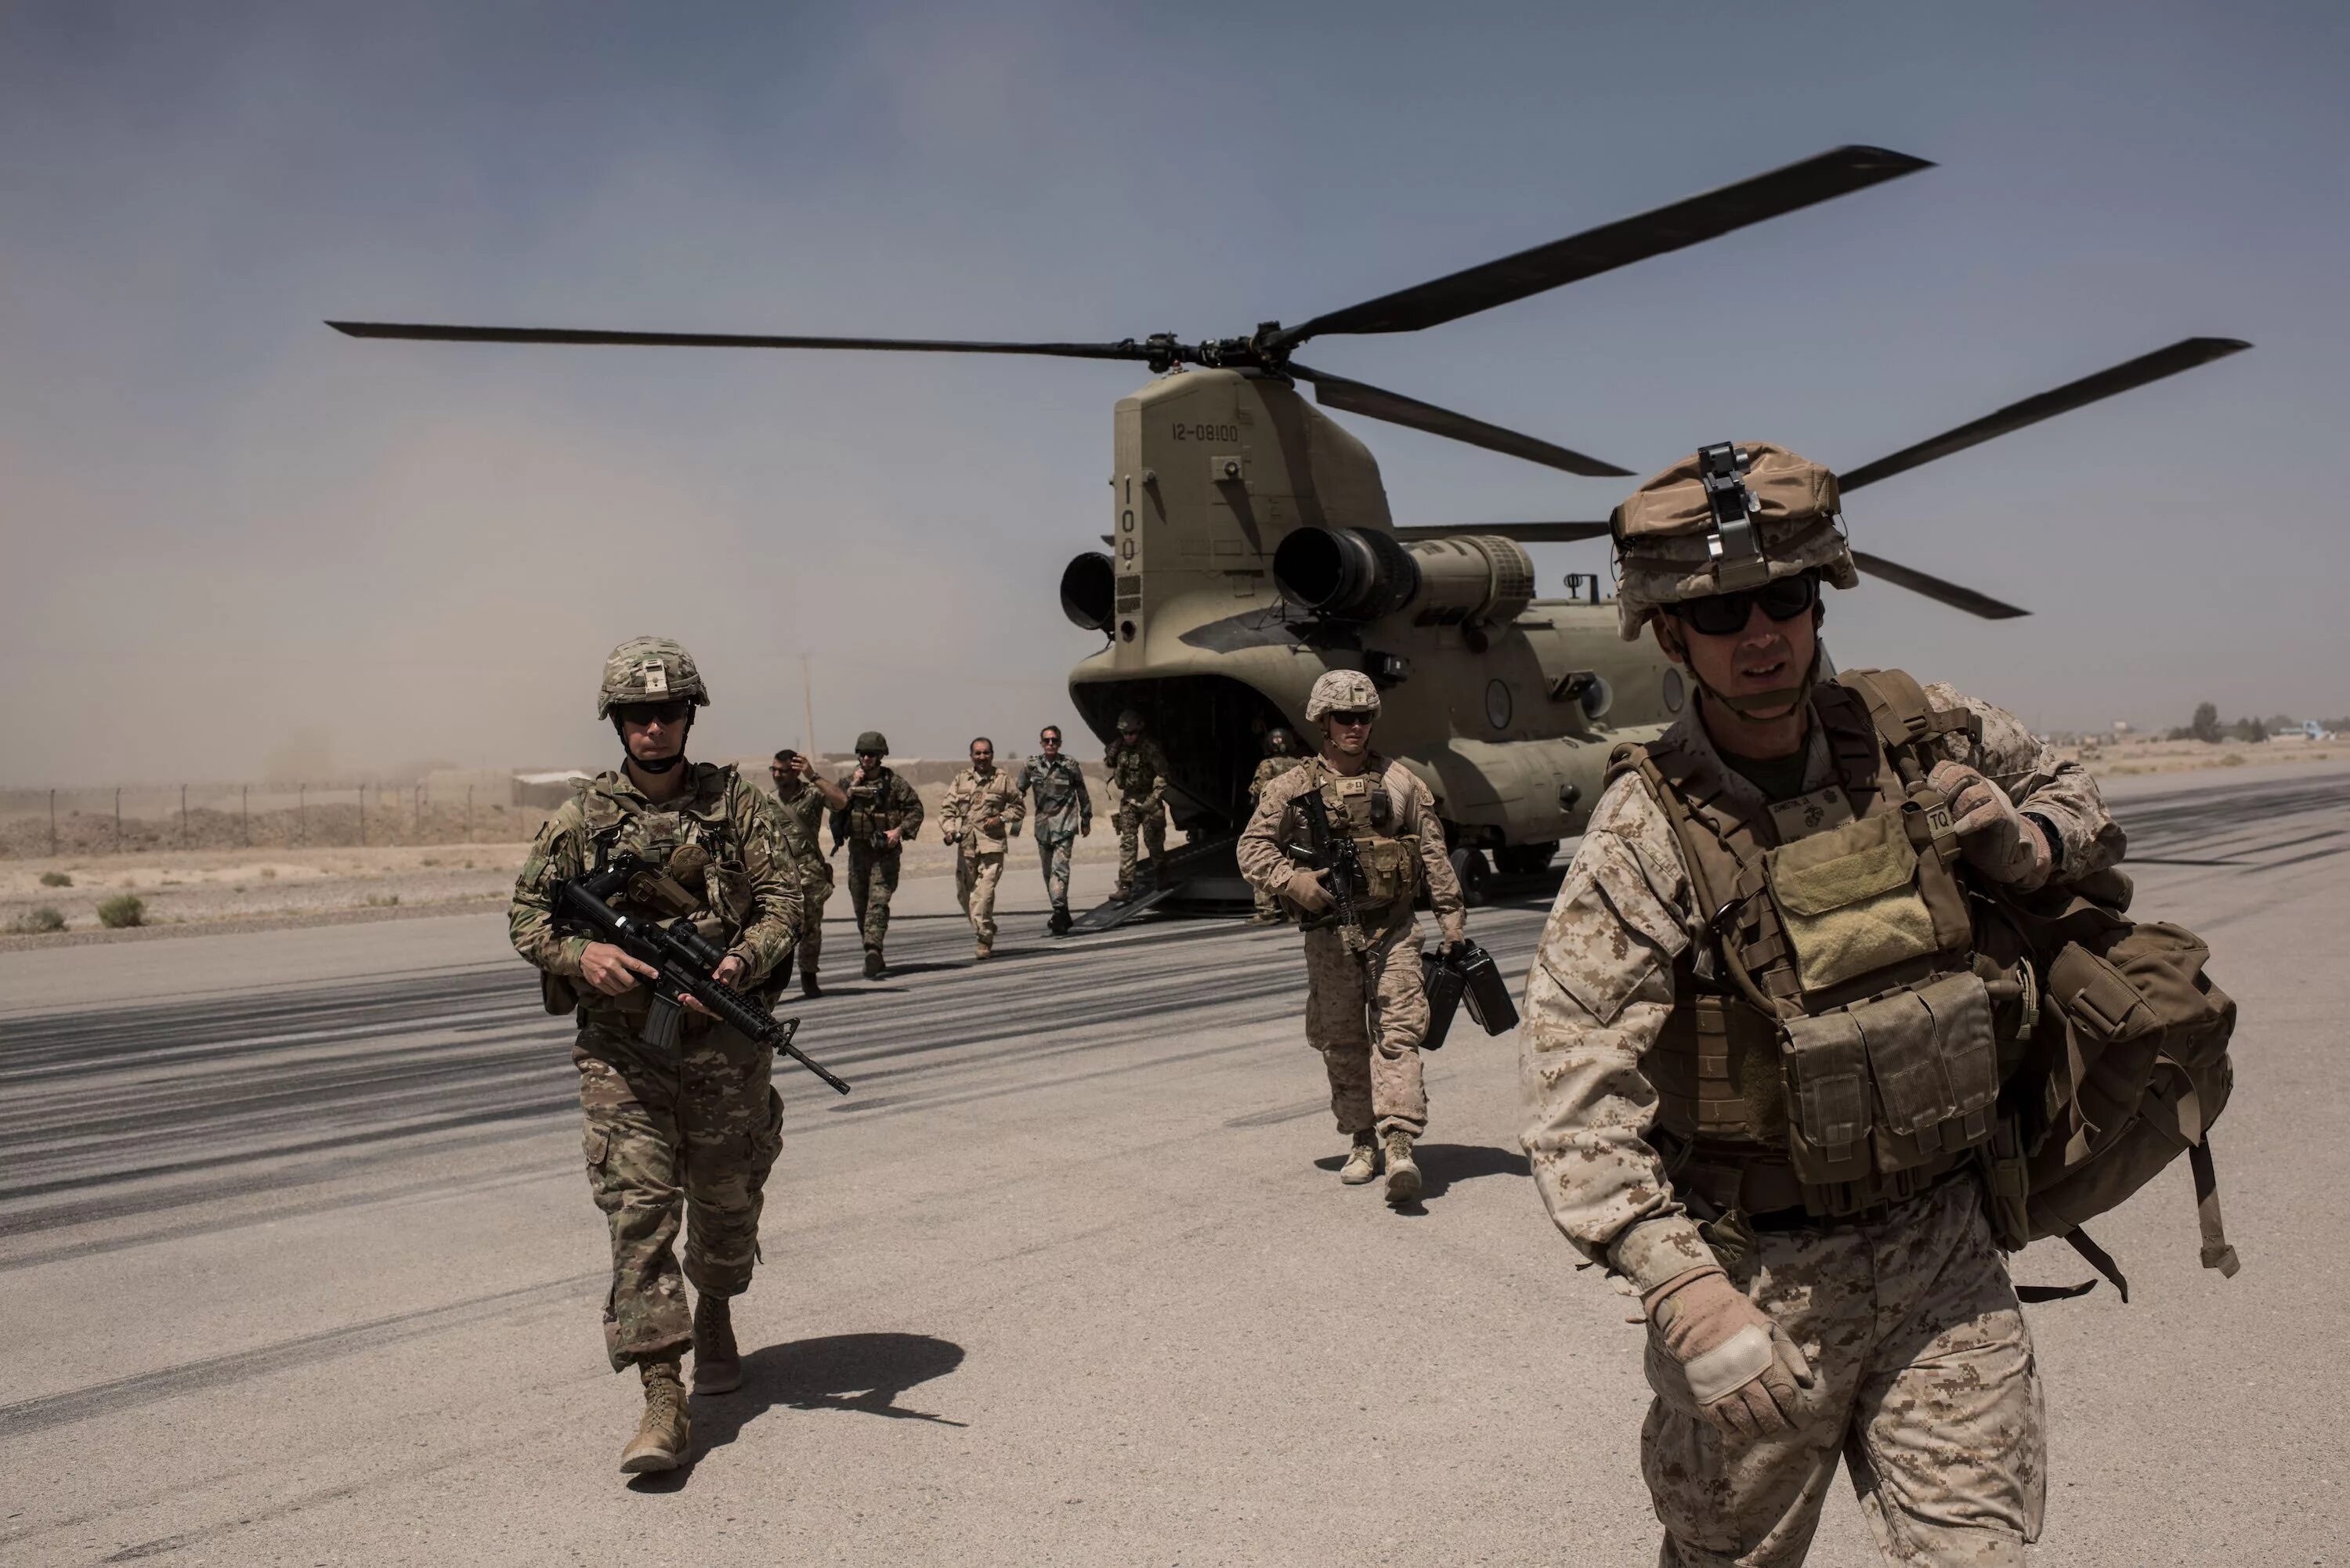 Нато в ираке. Военные США В Афганистане 2001. Американские войска в Афганистане. Американские солдаты в Афганистане 2001.